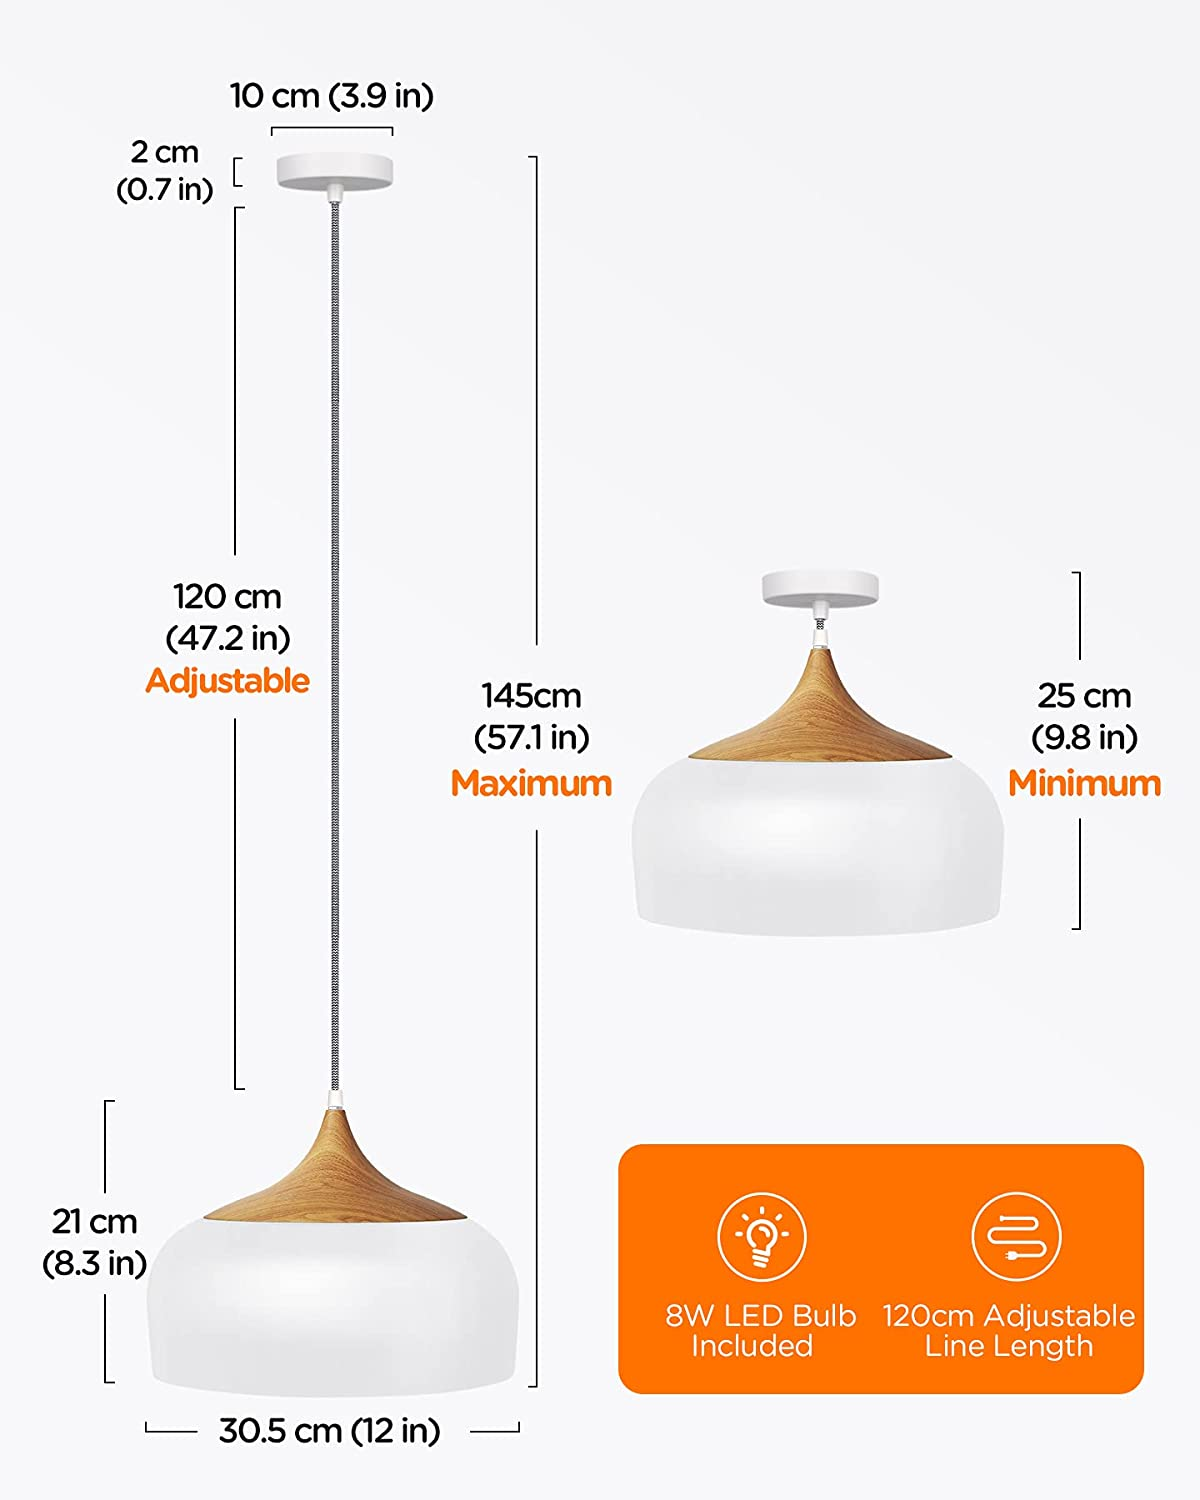 TOMONS LED Deckenlampe Skandinavisch Simpler Esszimmer für Wohnzimmer warmweiß Restaurant Stil Pendelleuchte Moderner